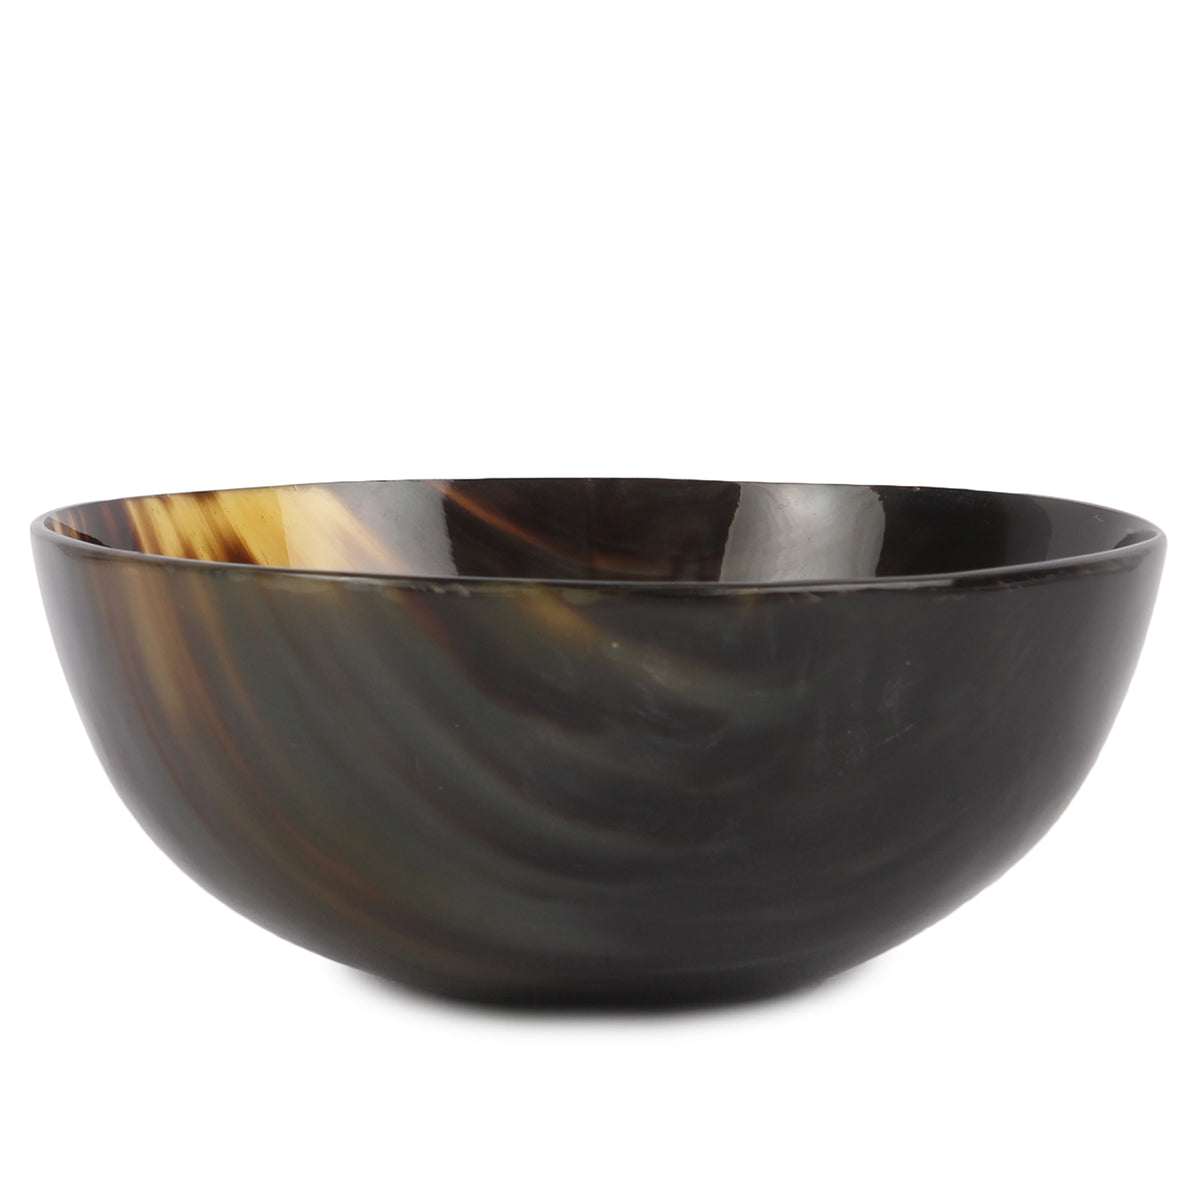 Horn bowl, medium